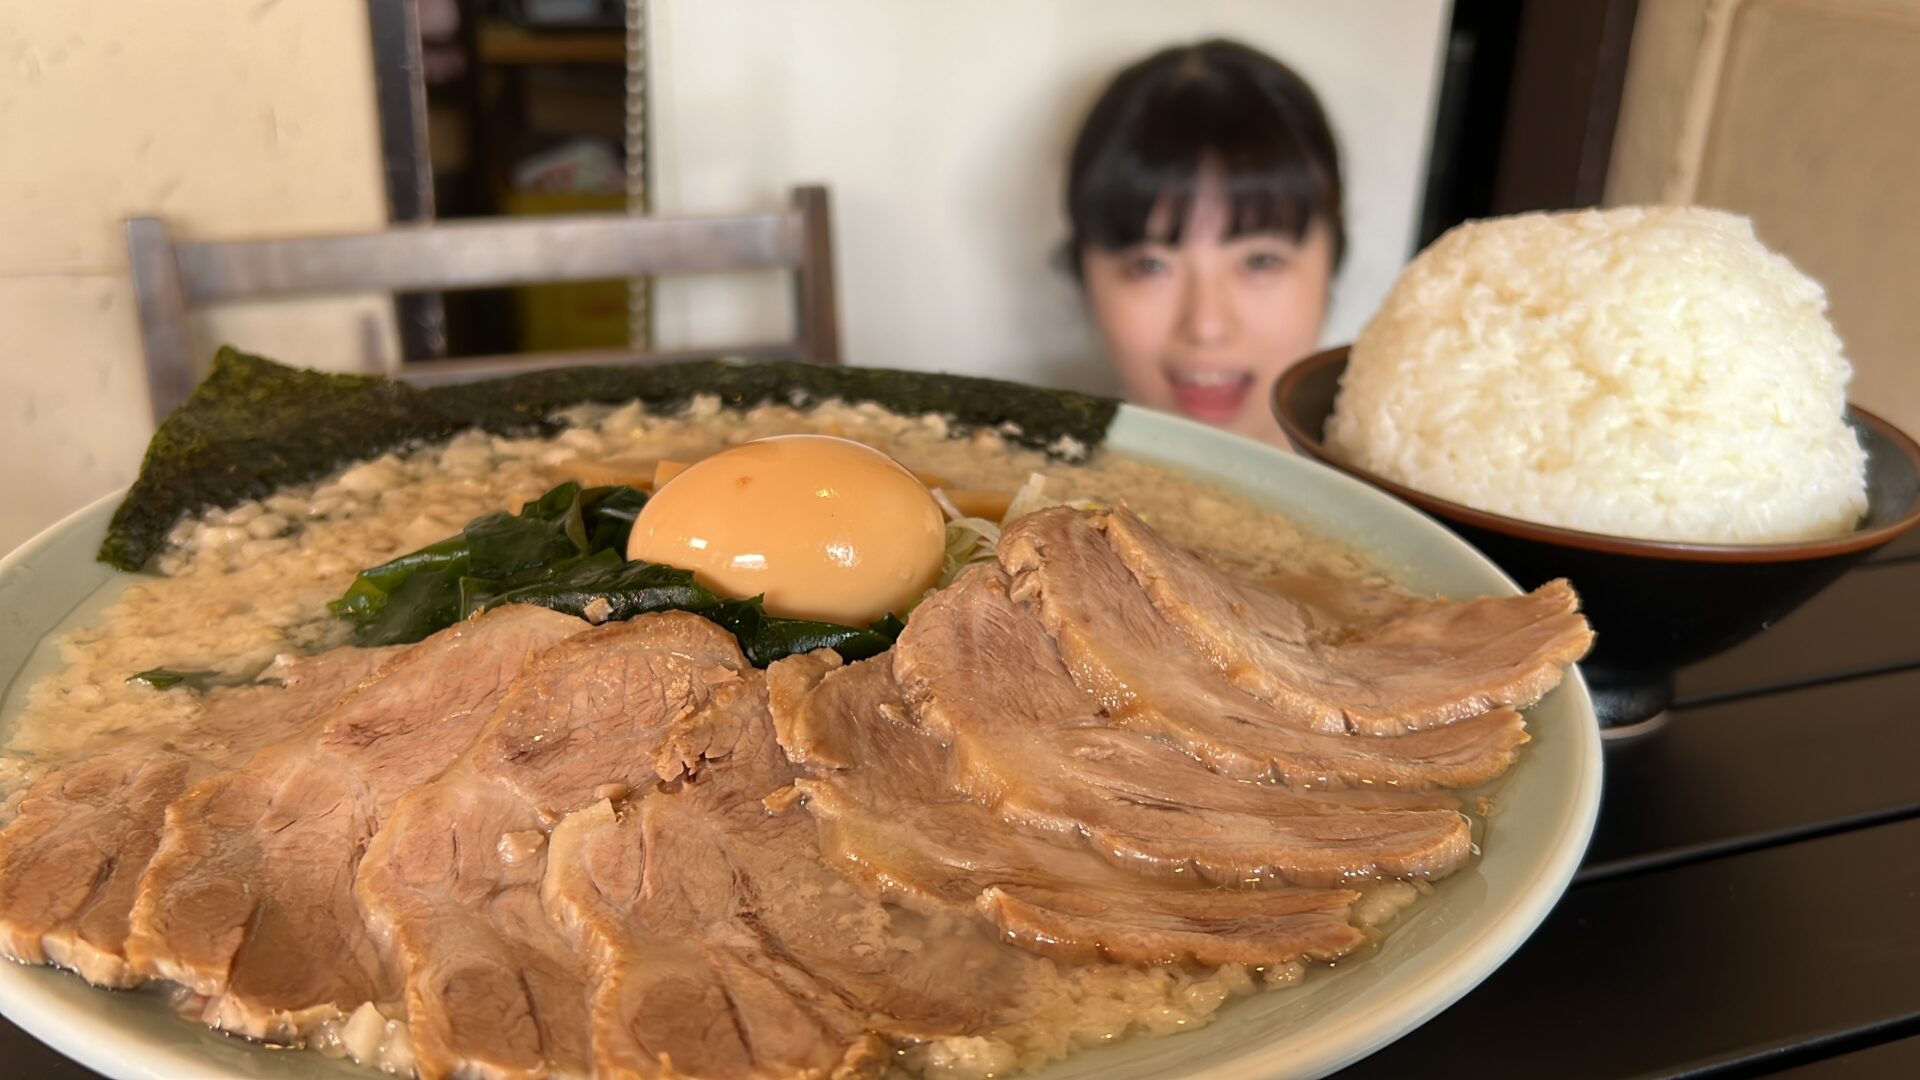 ニューラーメンショップ桶川スーパーチャーシュー麺大盛りWライス